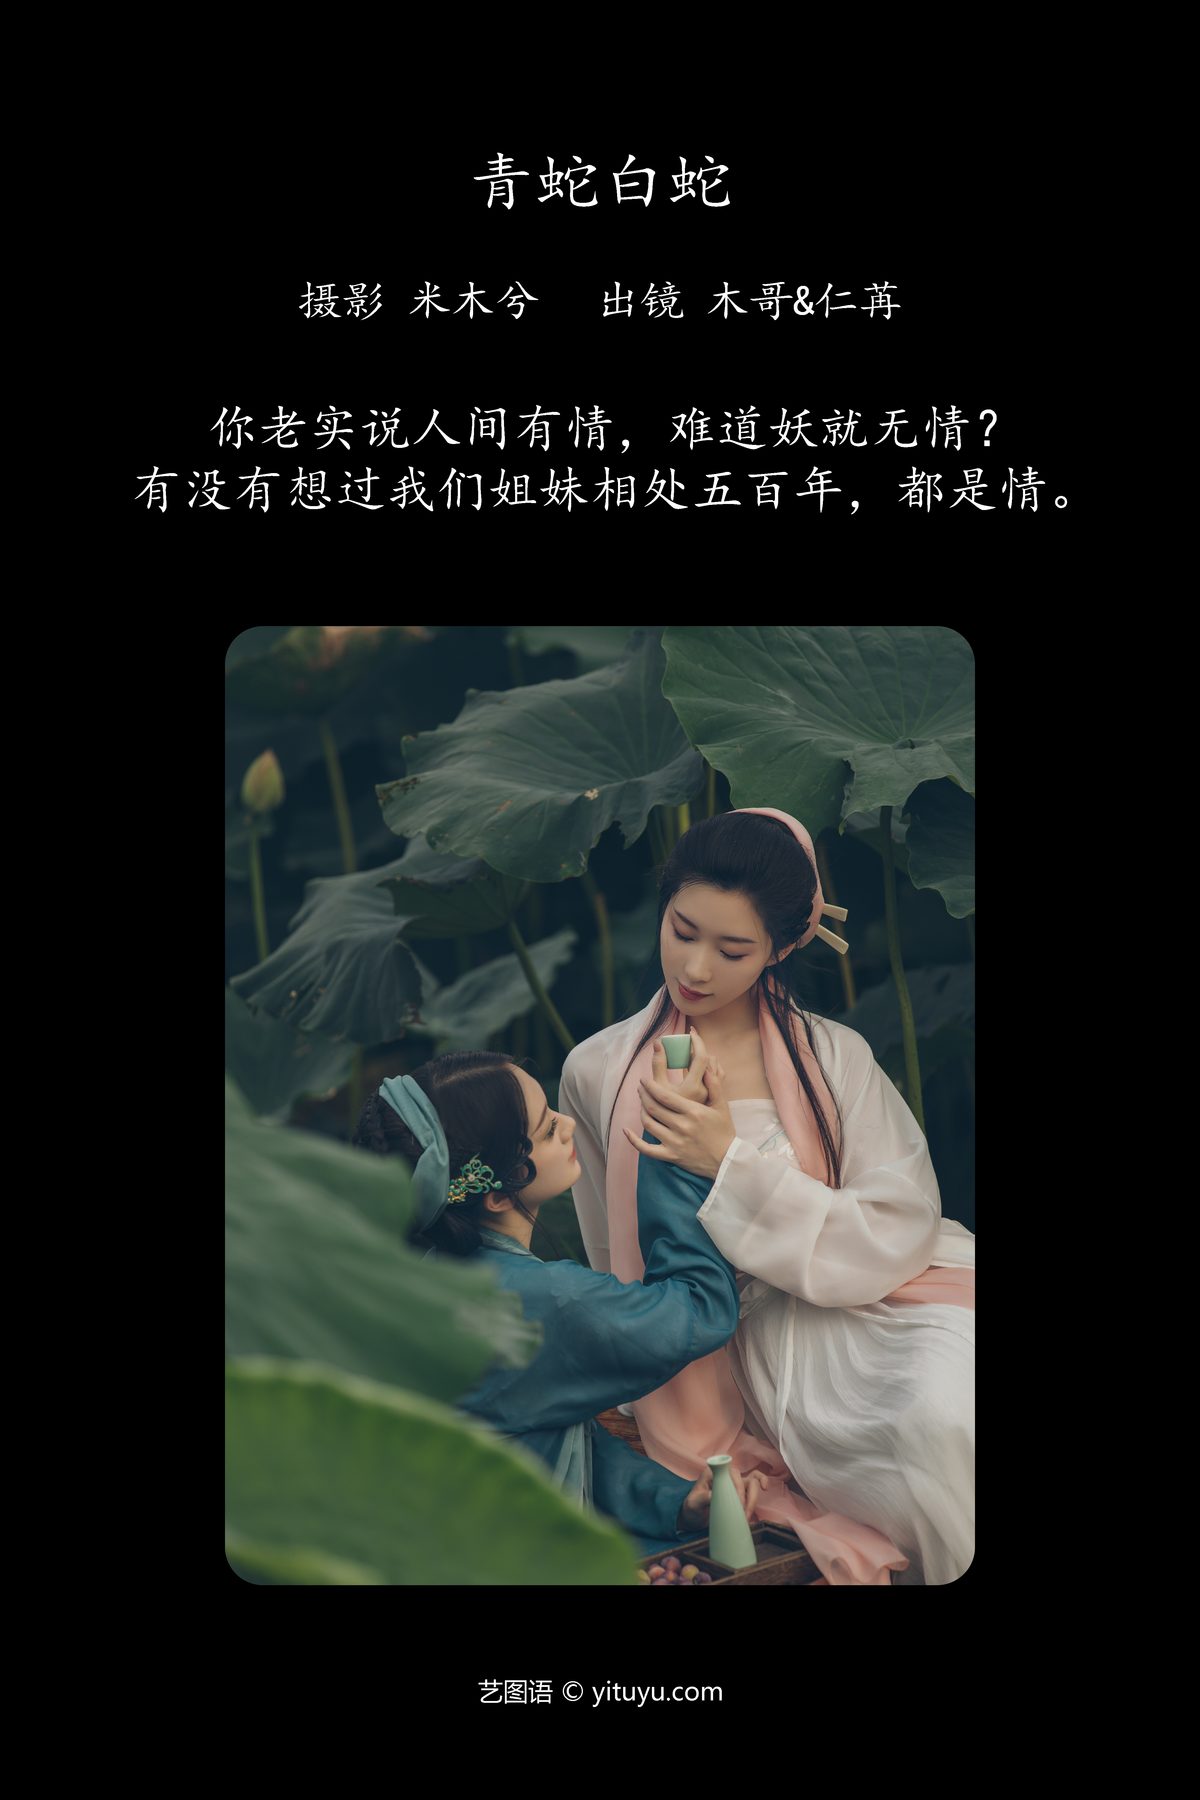 YiTuYu艺图语 Vol 4834 Mu Jing Shu 0001 0161075792.jpg